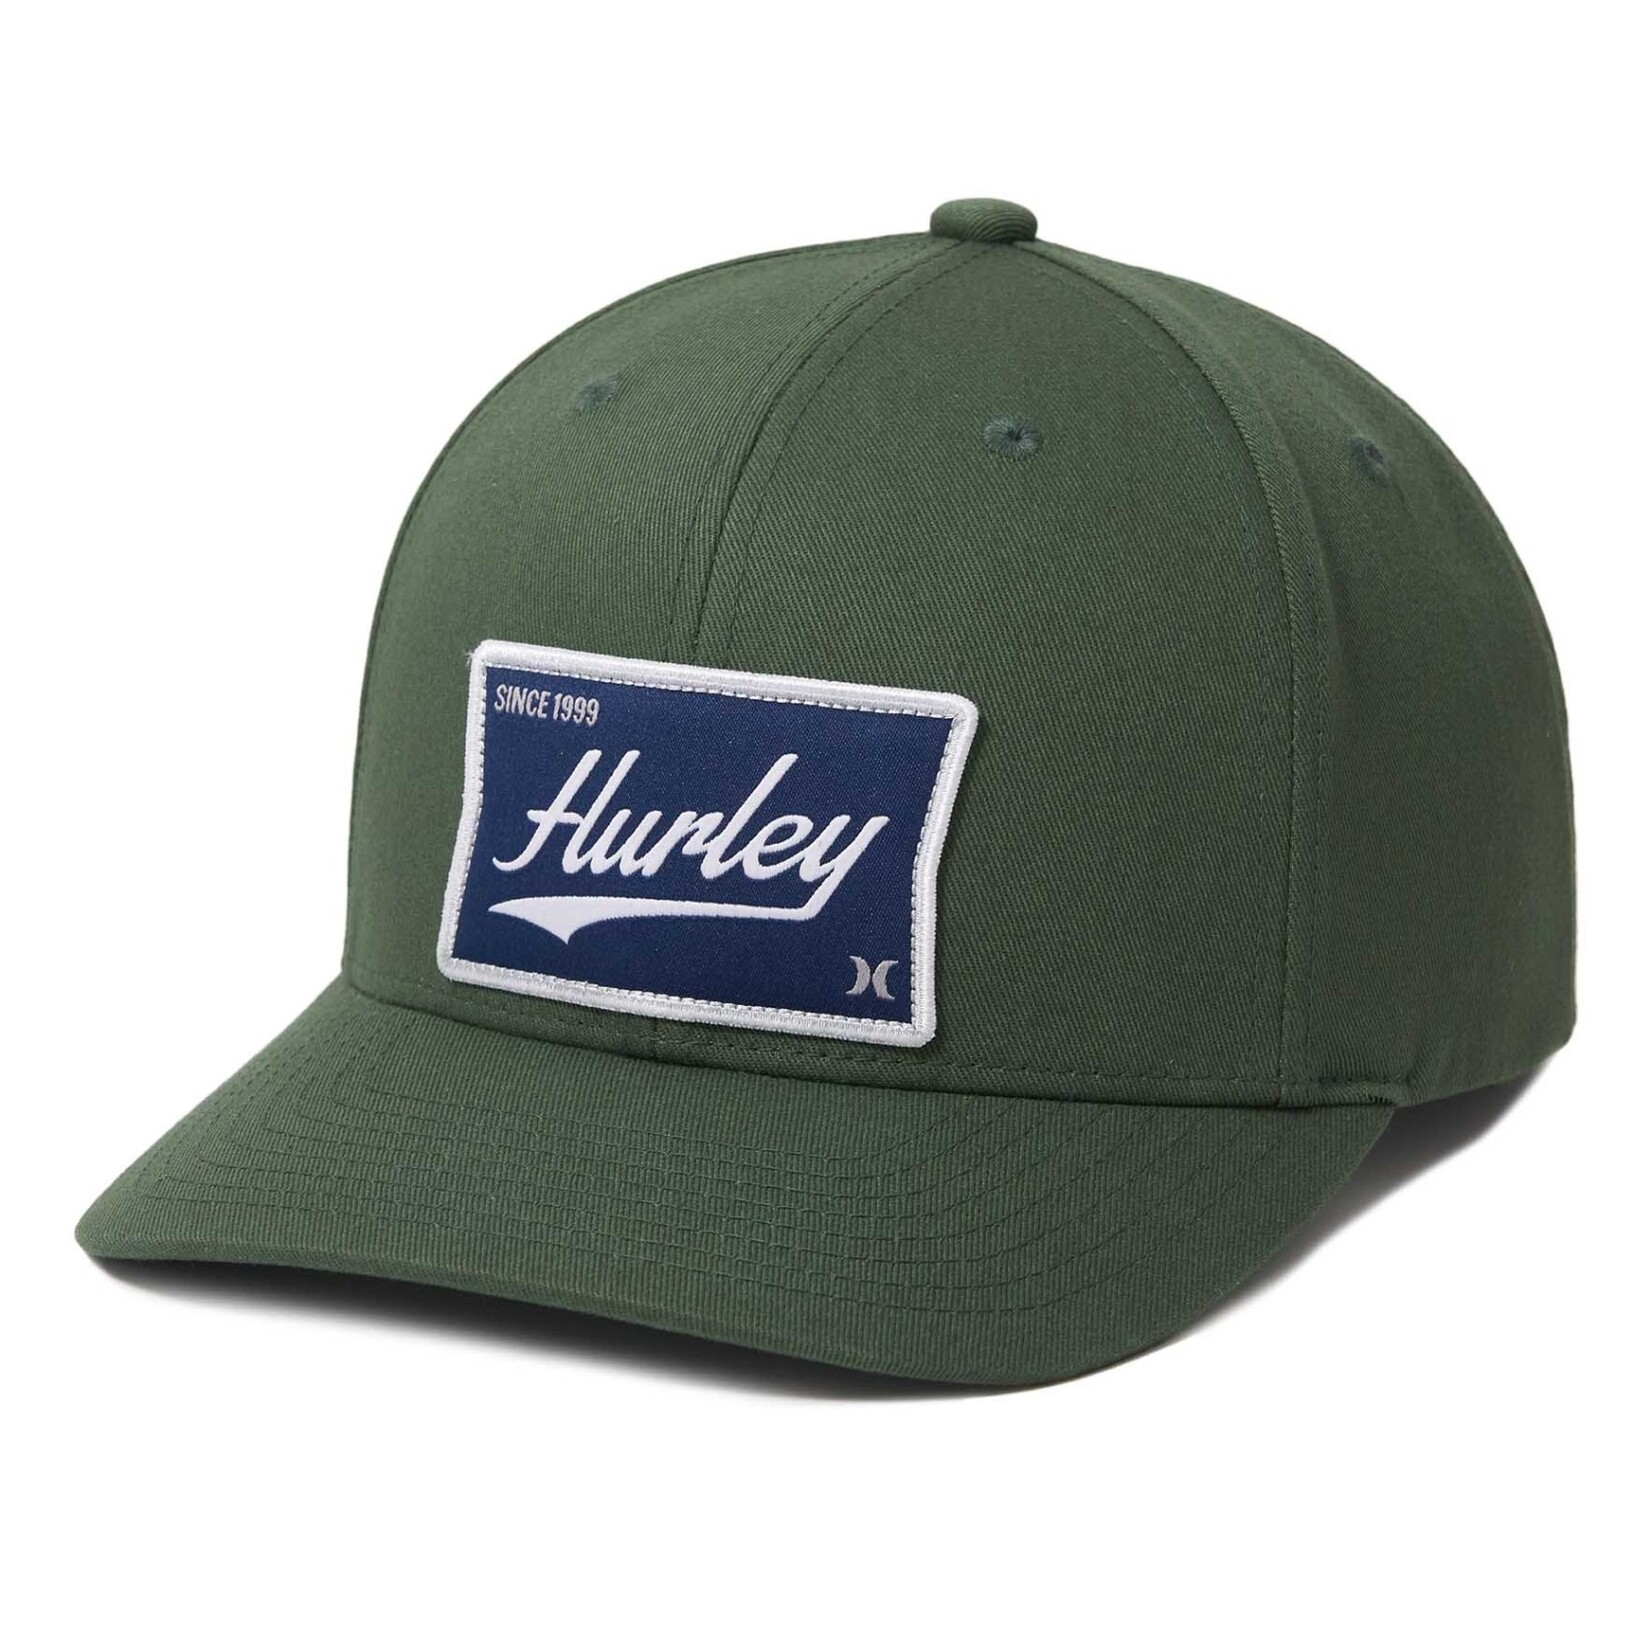 Hurley Hurley Hat, Casper, Snapback, Mens